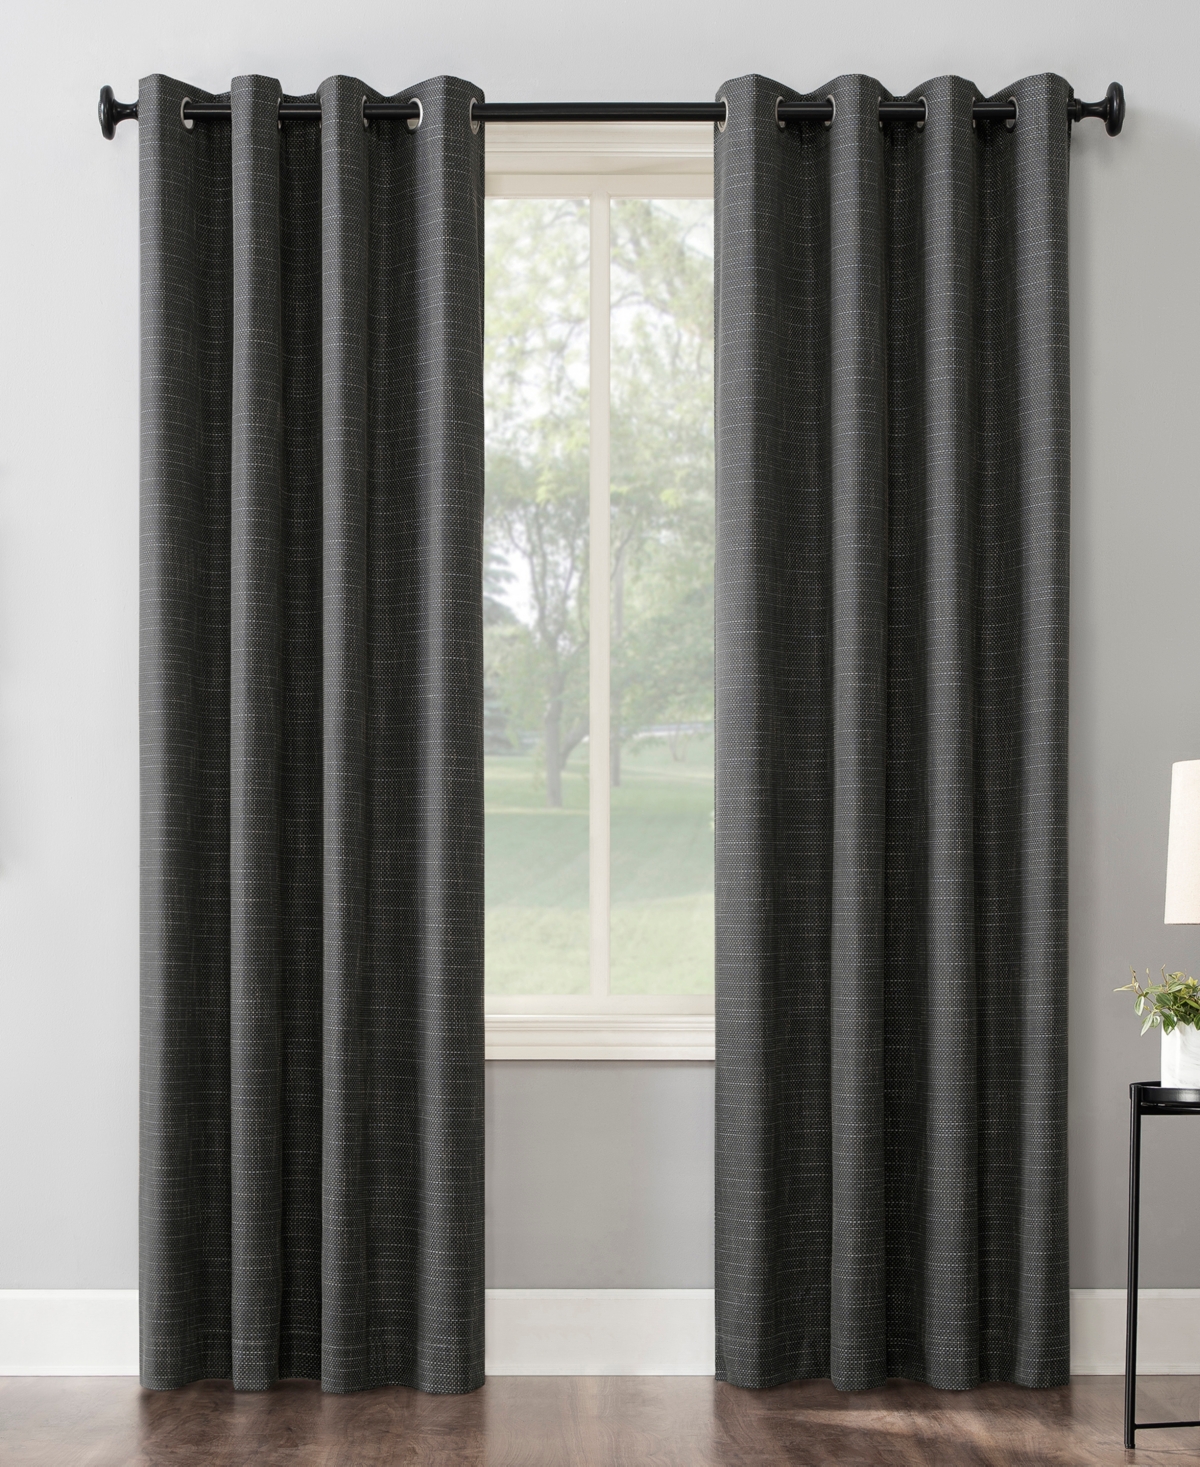 Kline Burlap Weave Thermal Extreme 100% Blackout Grommet Curtain Panel - Coal